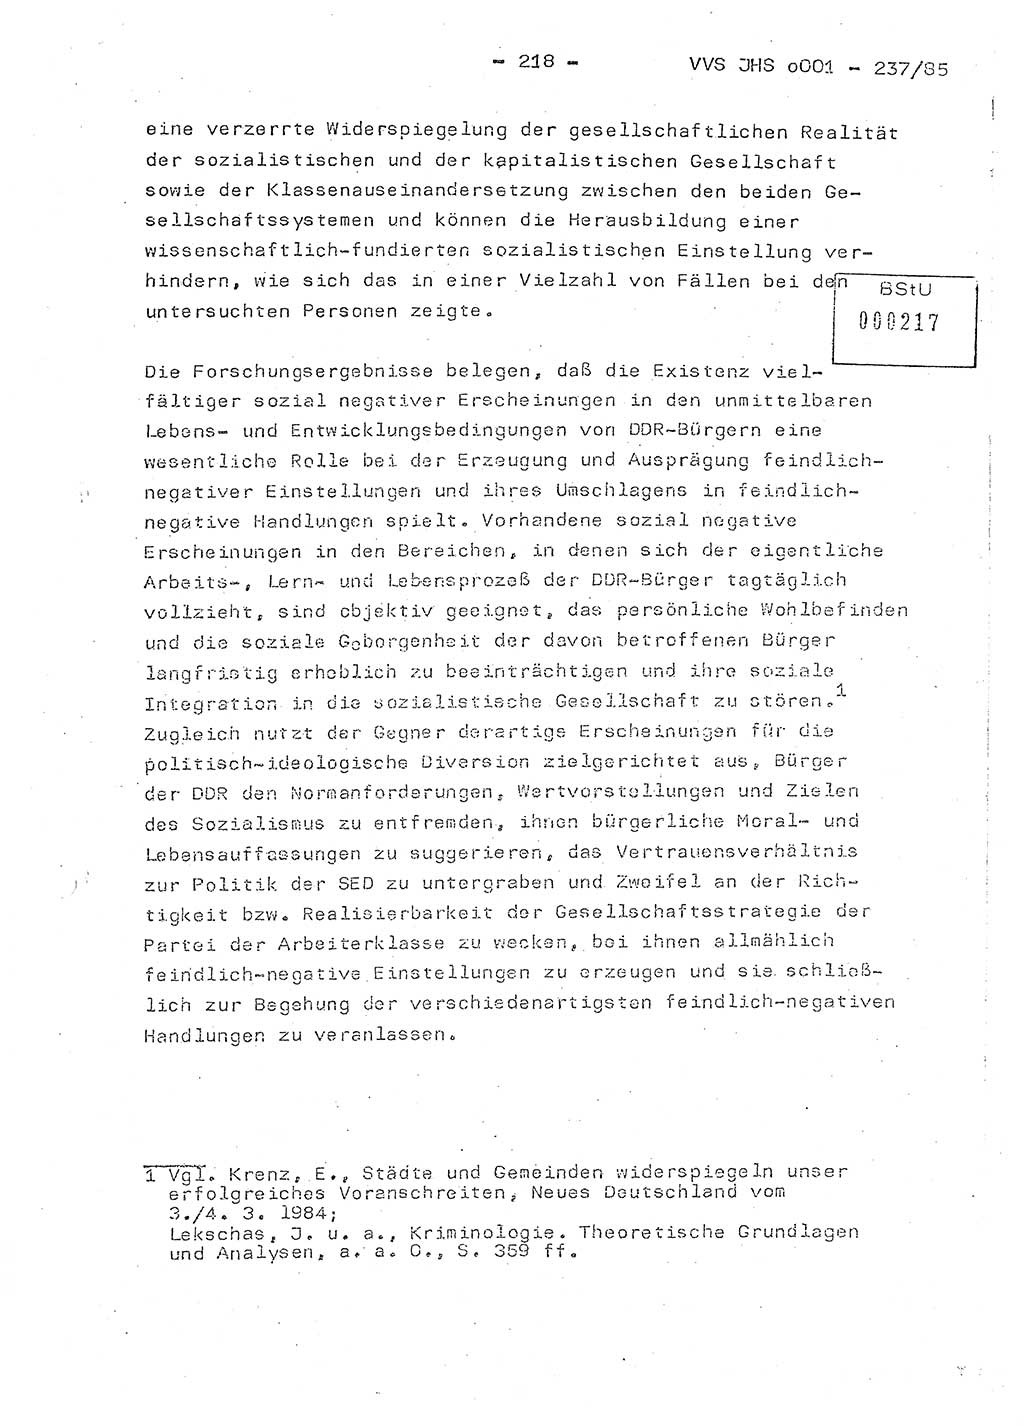 Dissertation Oberstleutnant Peter Jakulski (JHS), Oberstleutnat Christian Rudolph (HA Ⅸ), Major Horst Böttger (ZMD), Major Wolfgang Grüneberg (JHS), Major Albert Meutsch (JHS), Ministerium für Staatssicherheit (MfS) [Deutsche Demokratische Republik (DDR)], Juristische Hochschule (JHS), Vertrauliche Verschlußsache (VVS) o001-237/85, Potsdam 1985, Seite 218 (Diss. MfS DDR JHS VVS o001-237/85 1985, S. 218)